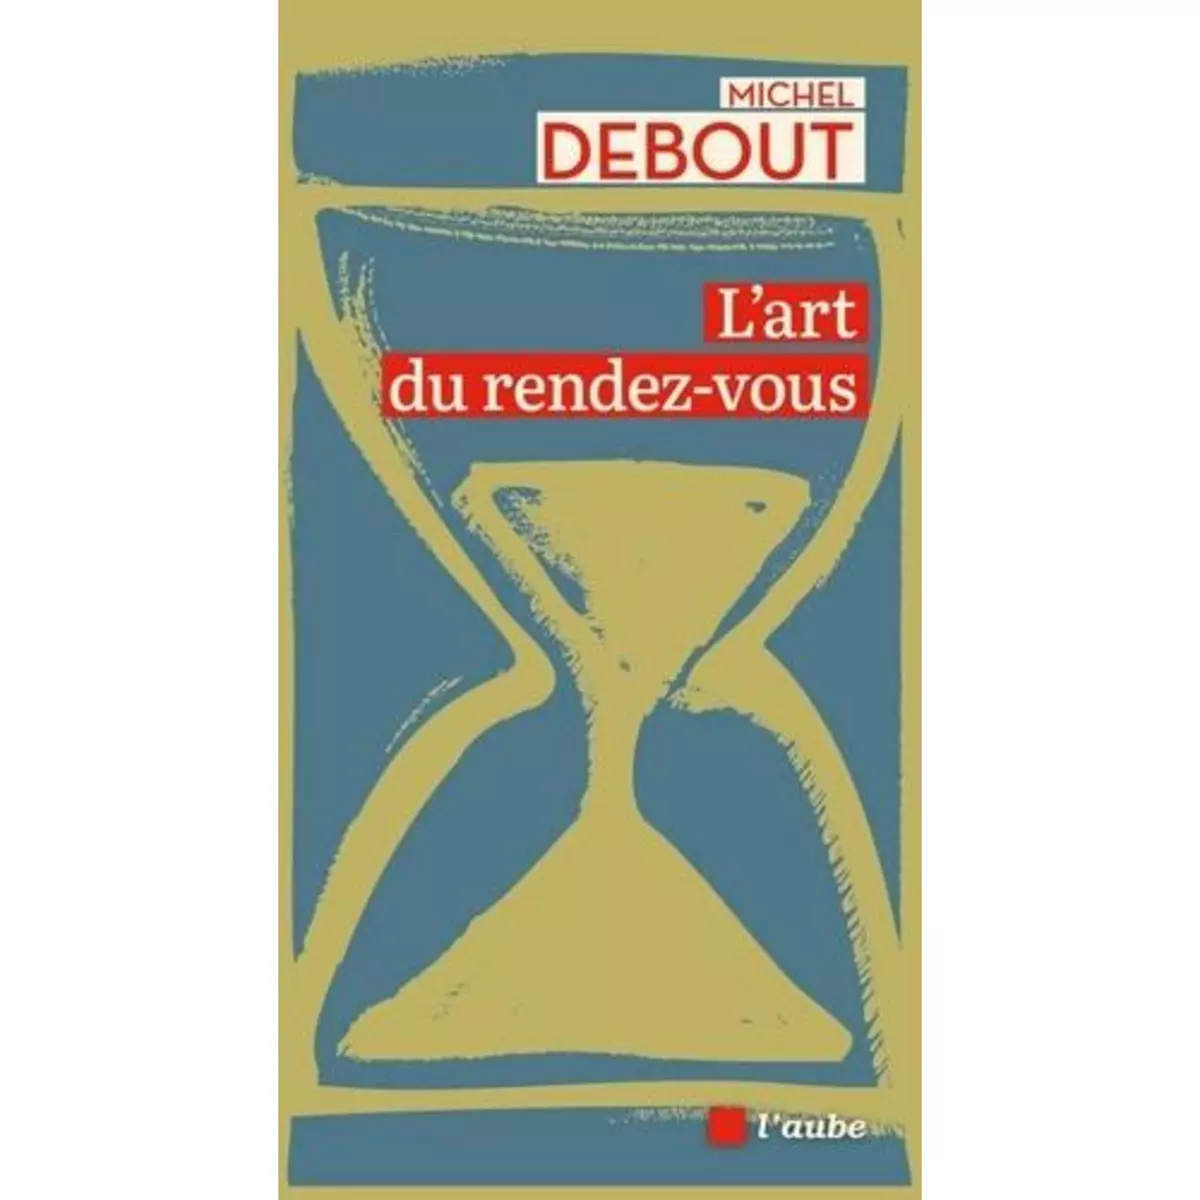  L'ART DU RENDEZ-VOUS, Debout Michel